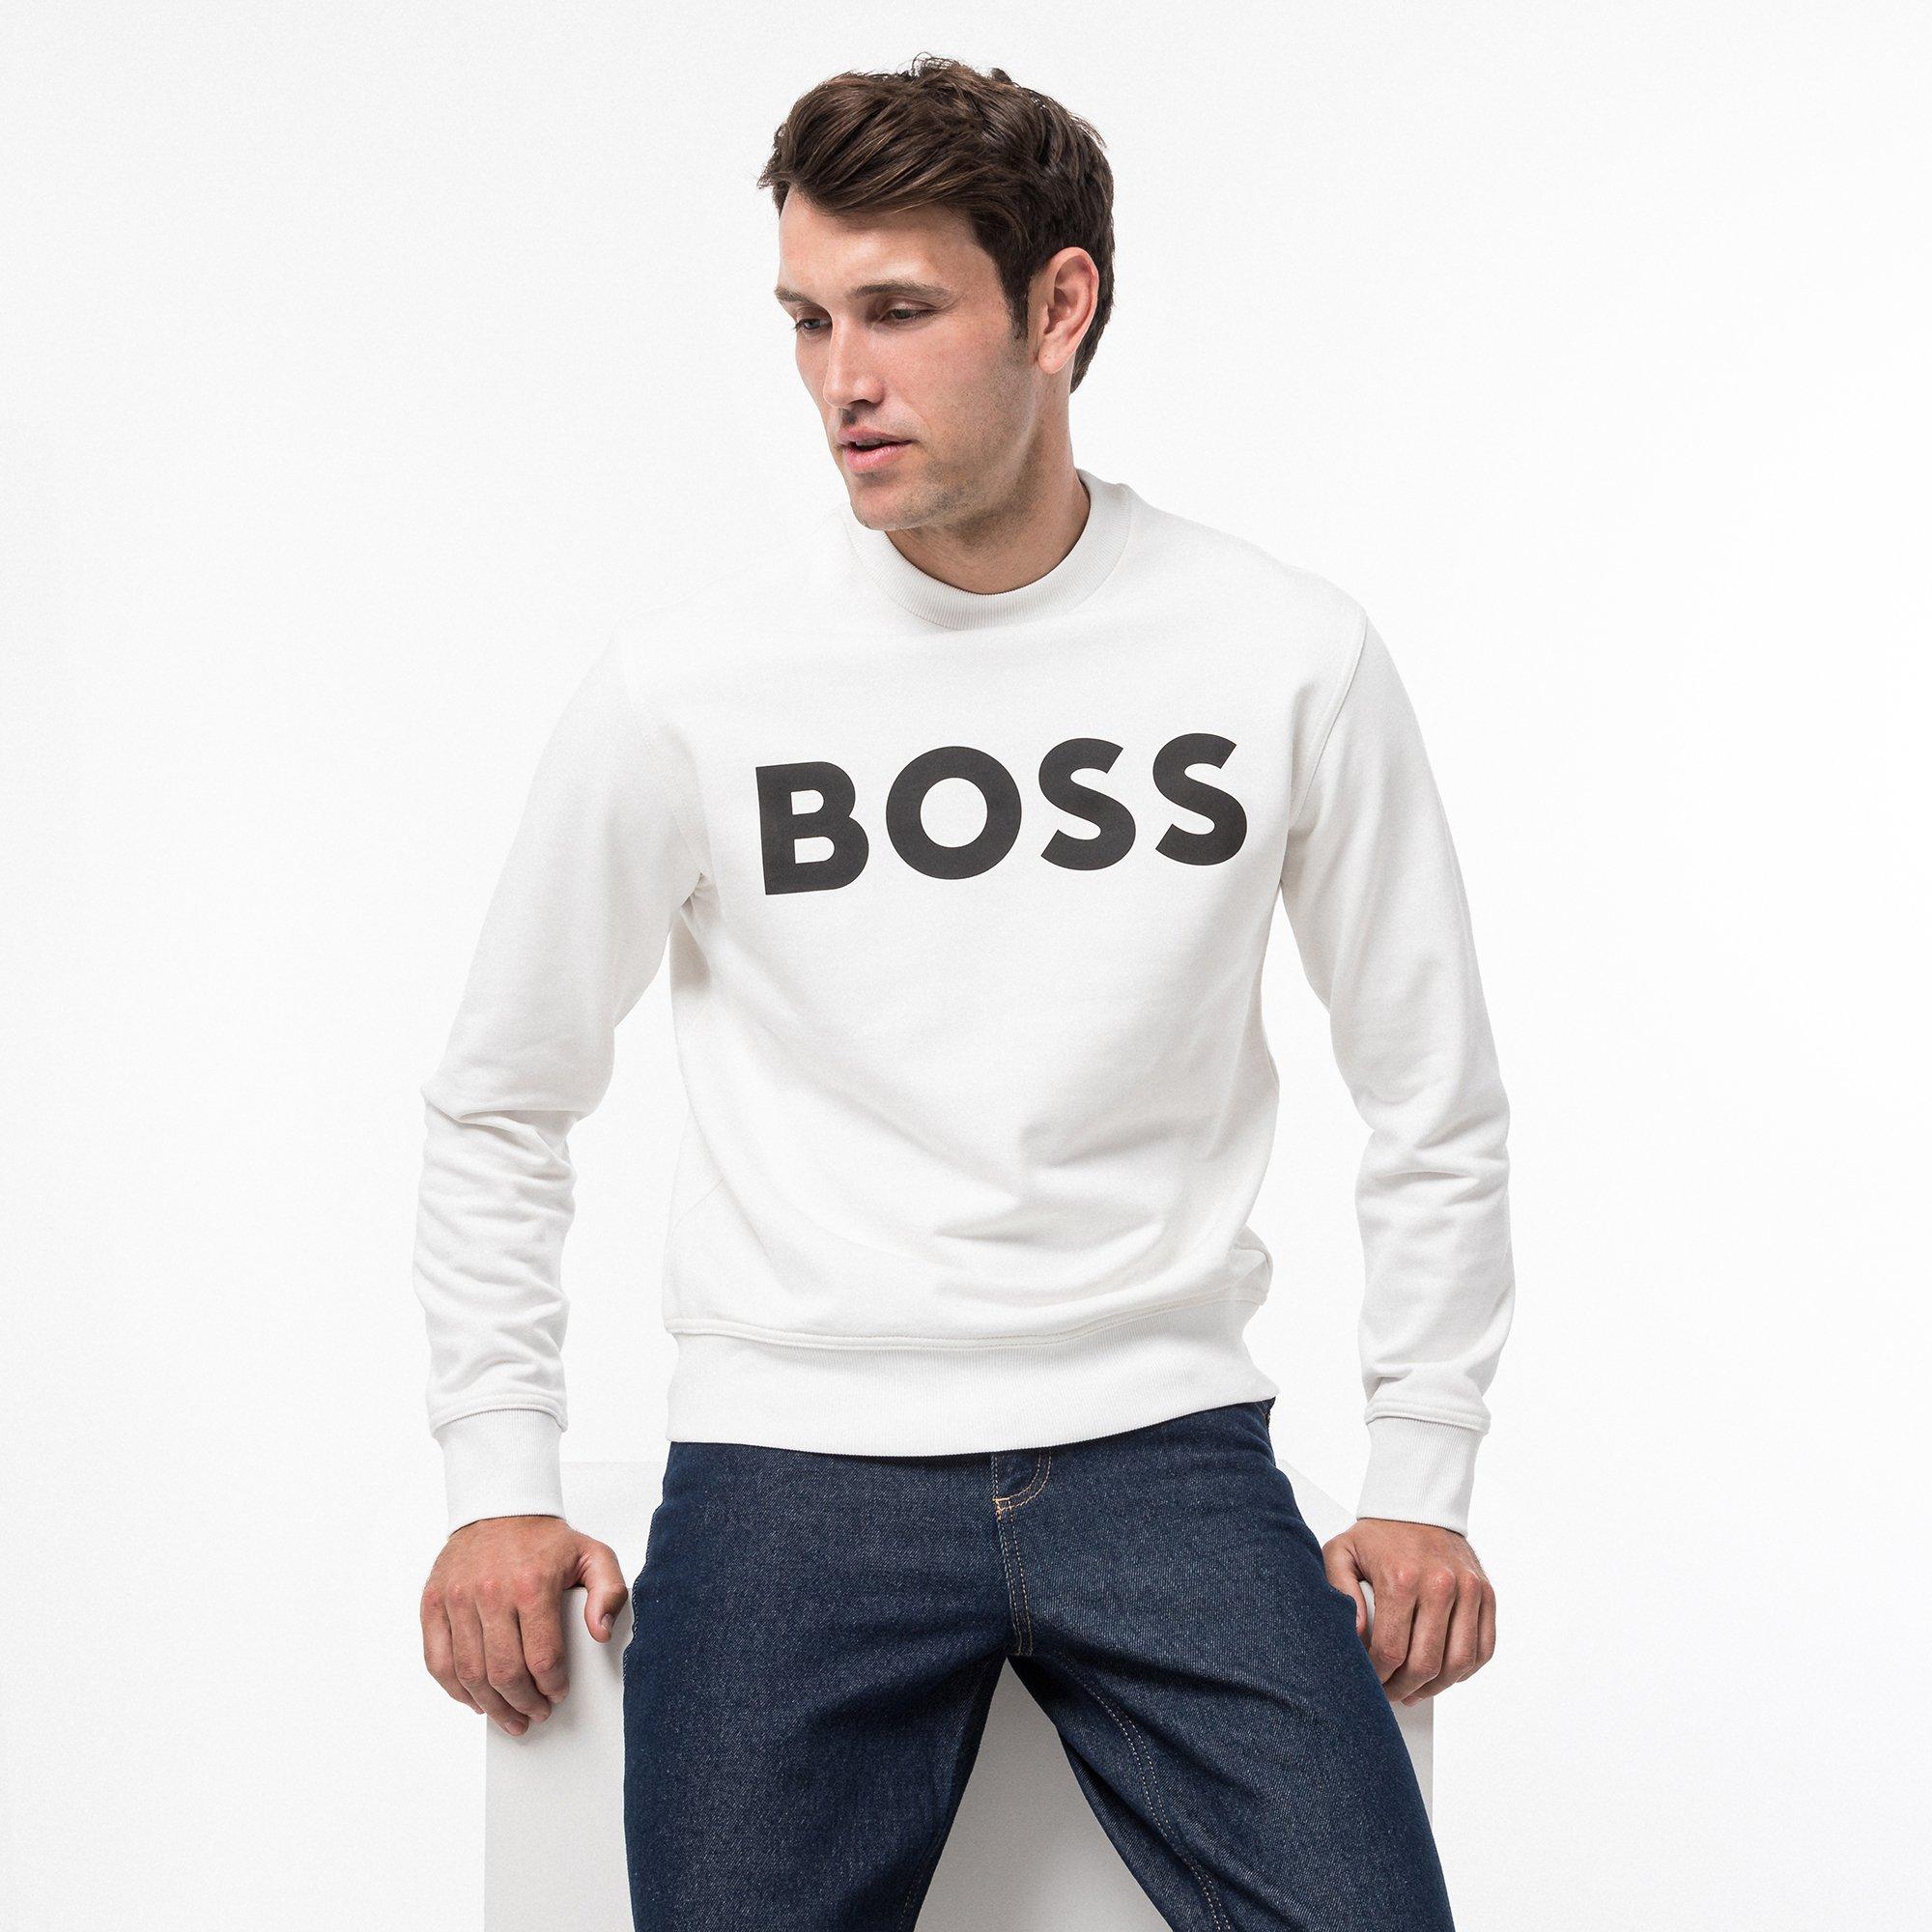 online - kaufen MANOR BOSS Sweatshirt ORANGE WeBasicCrew |